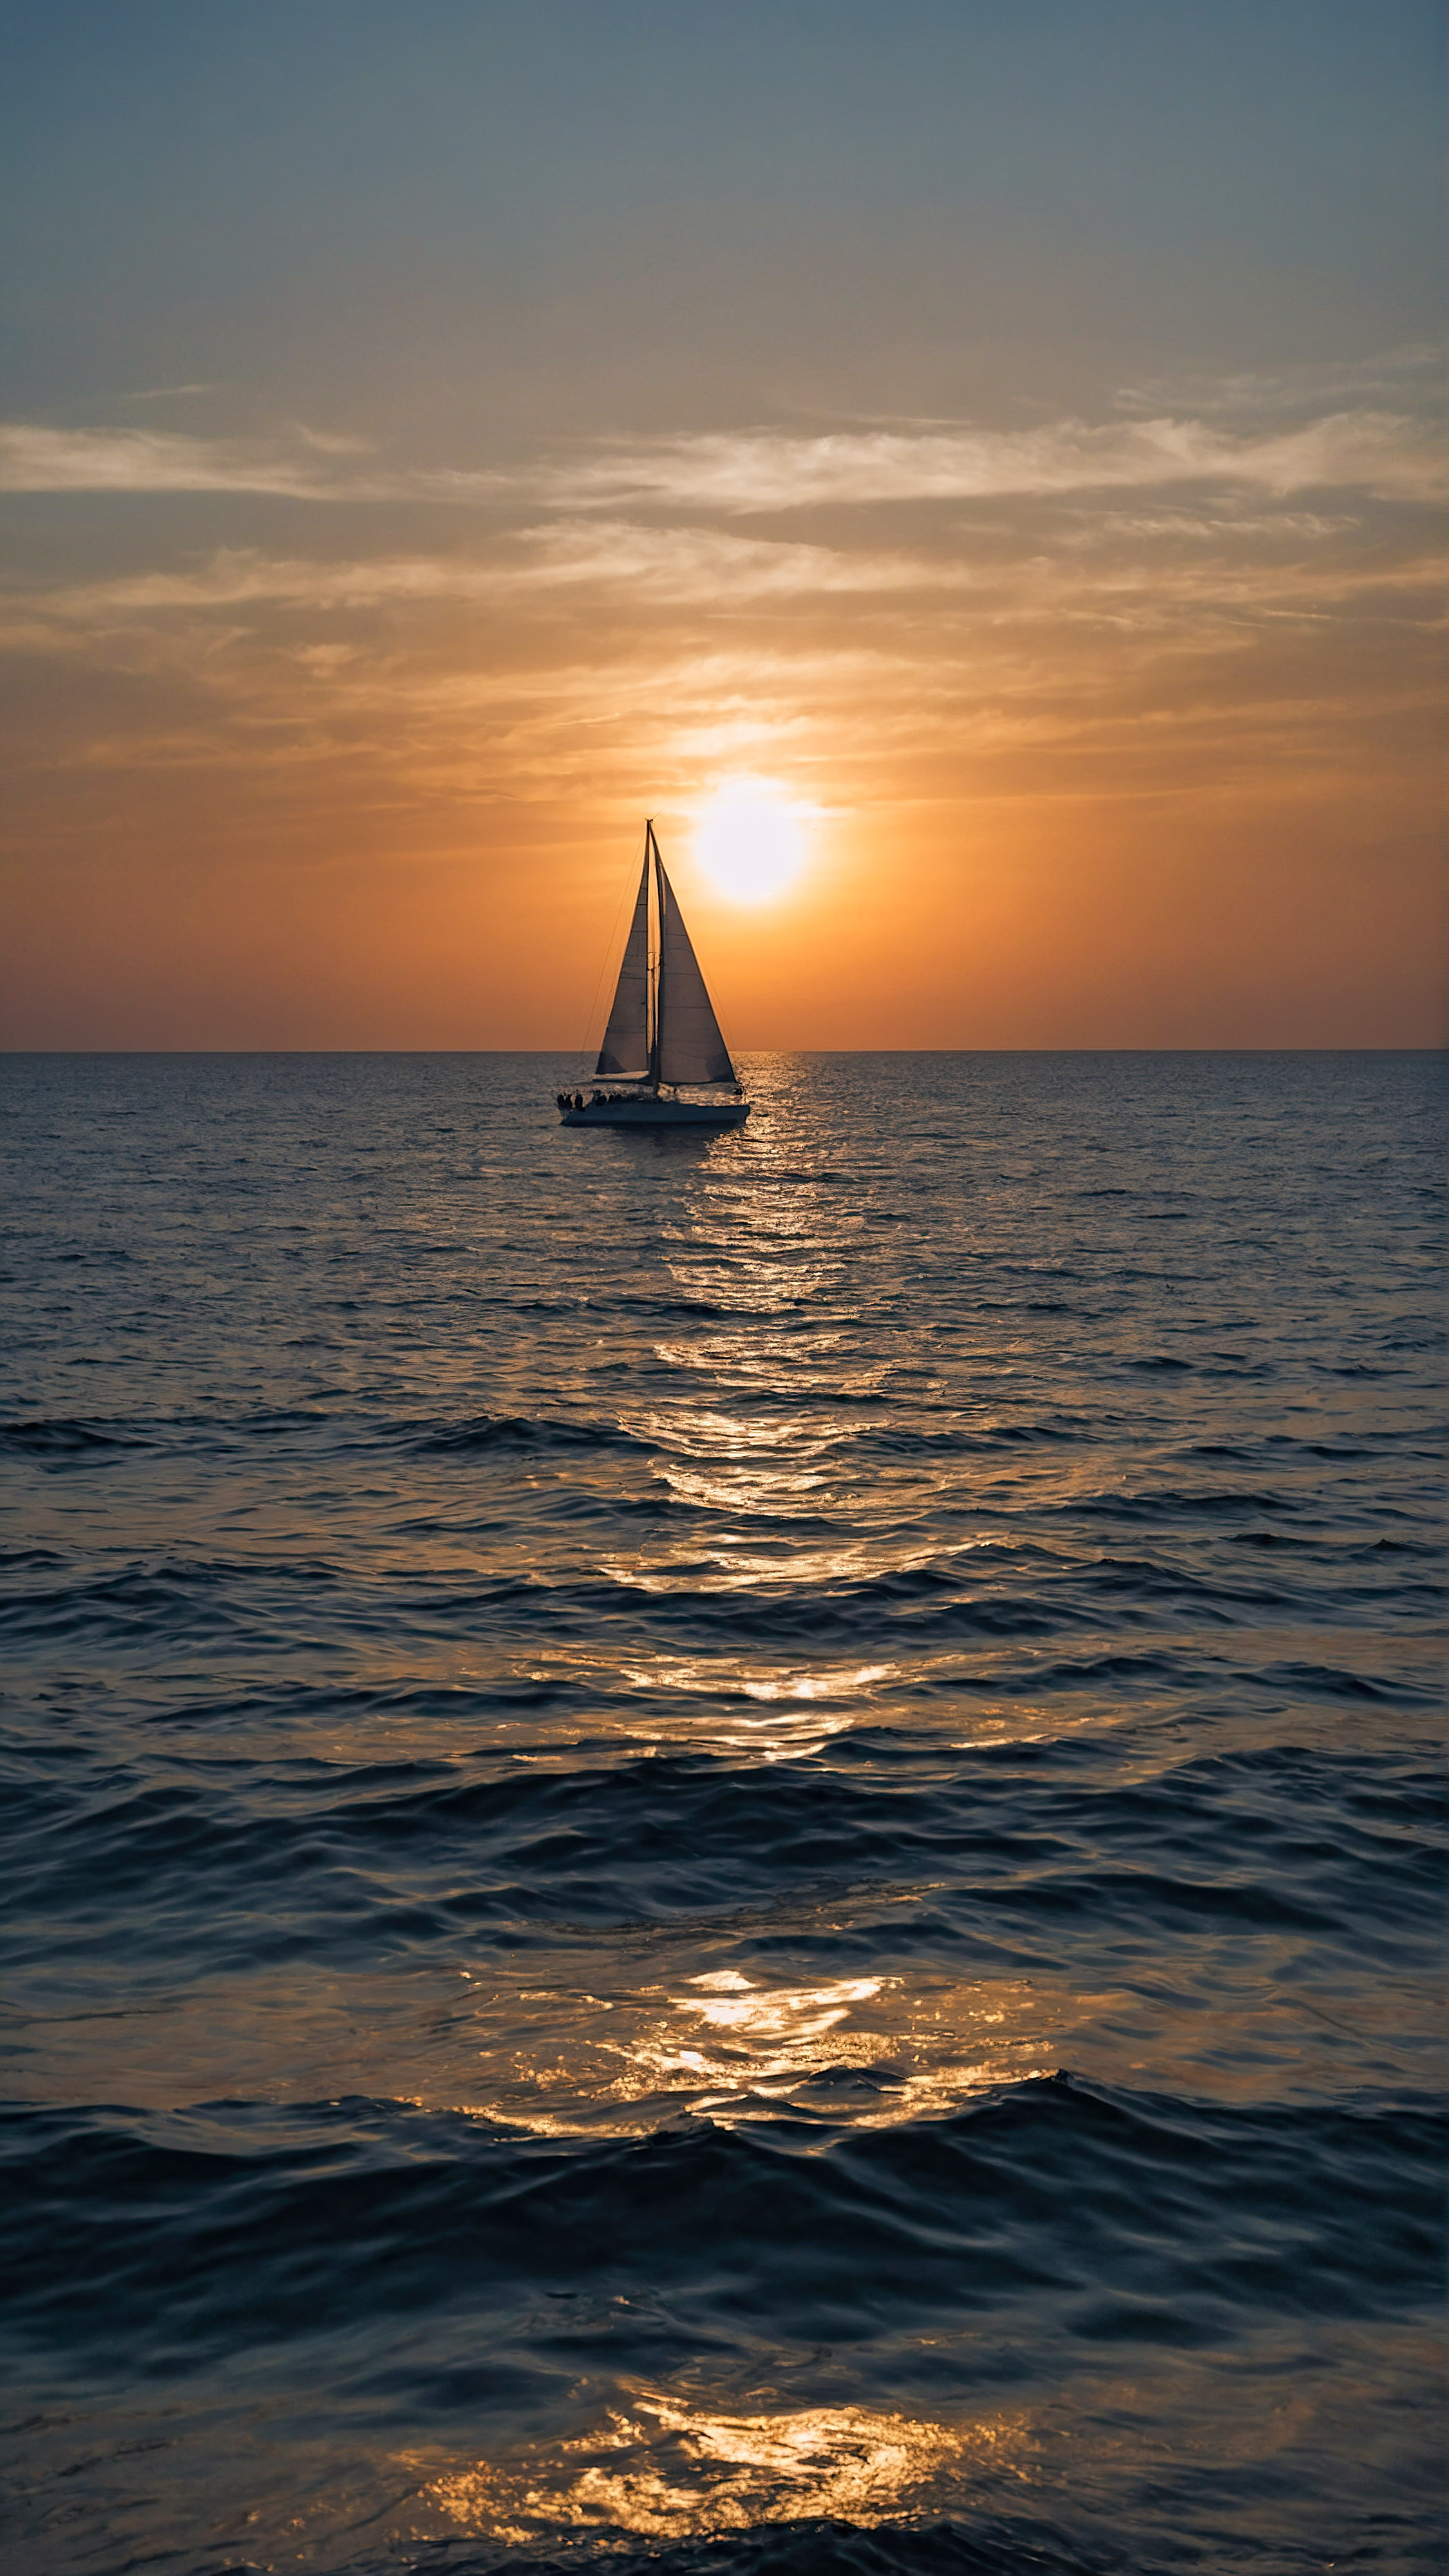 Apportez la beauté de l'océan à votre appareil avec un fond d'écran esthétique, dépeignant une vue sereine de l'océan sous un ciel de coucher de soleil en dégradé avec la silhouette d'un voilier distant.